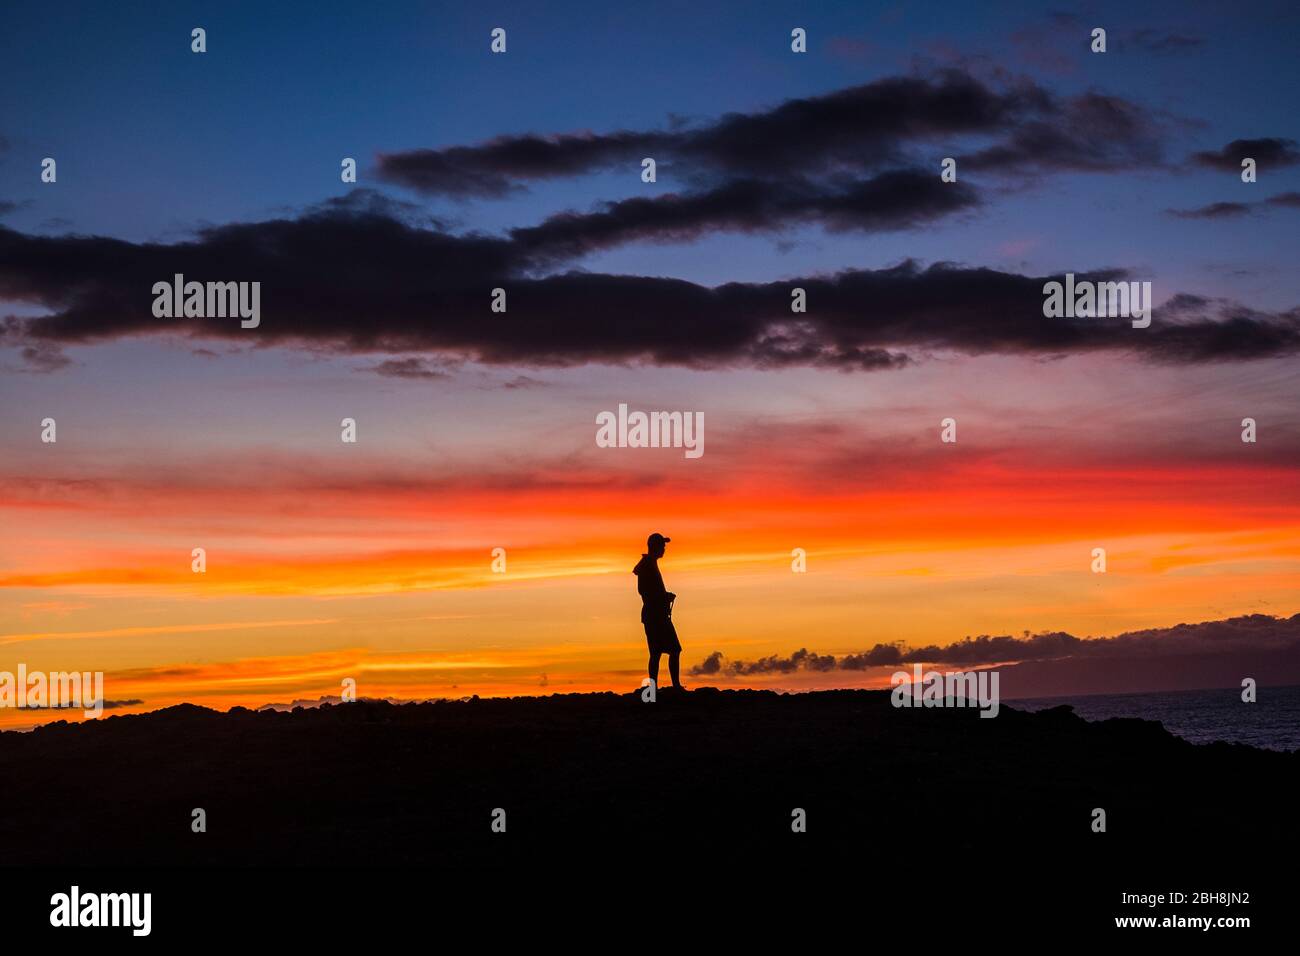 Mann im Freien stehend, der den romantischen Sonnenuntergang genießt - die Natur und das Glück für freien Lebensstil fühlt - Menschen und Outdoor-Show mit farbigen Wolken in der Dämmerung Stockfoto